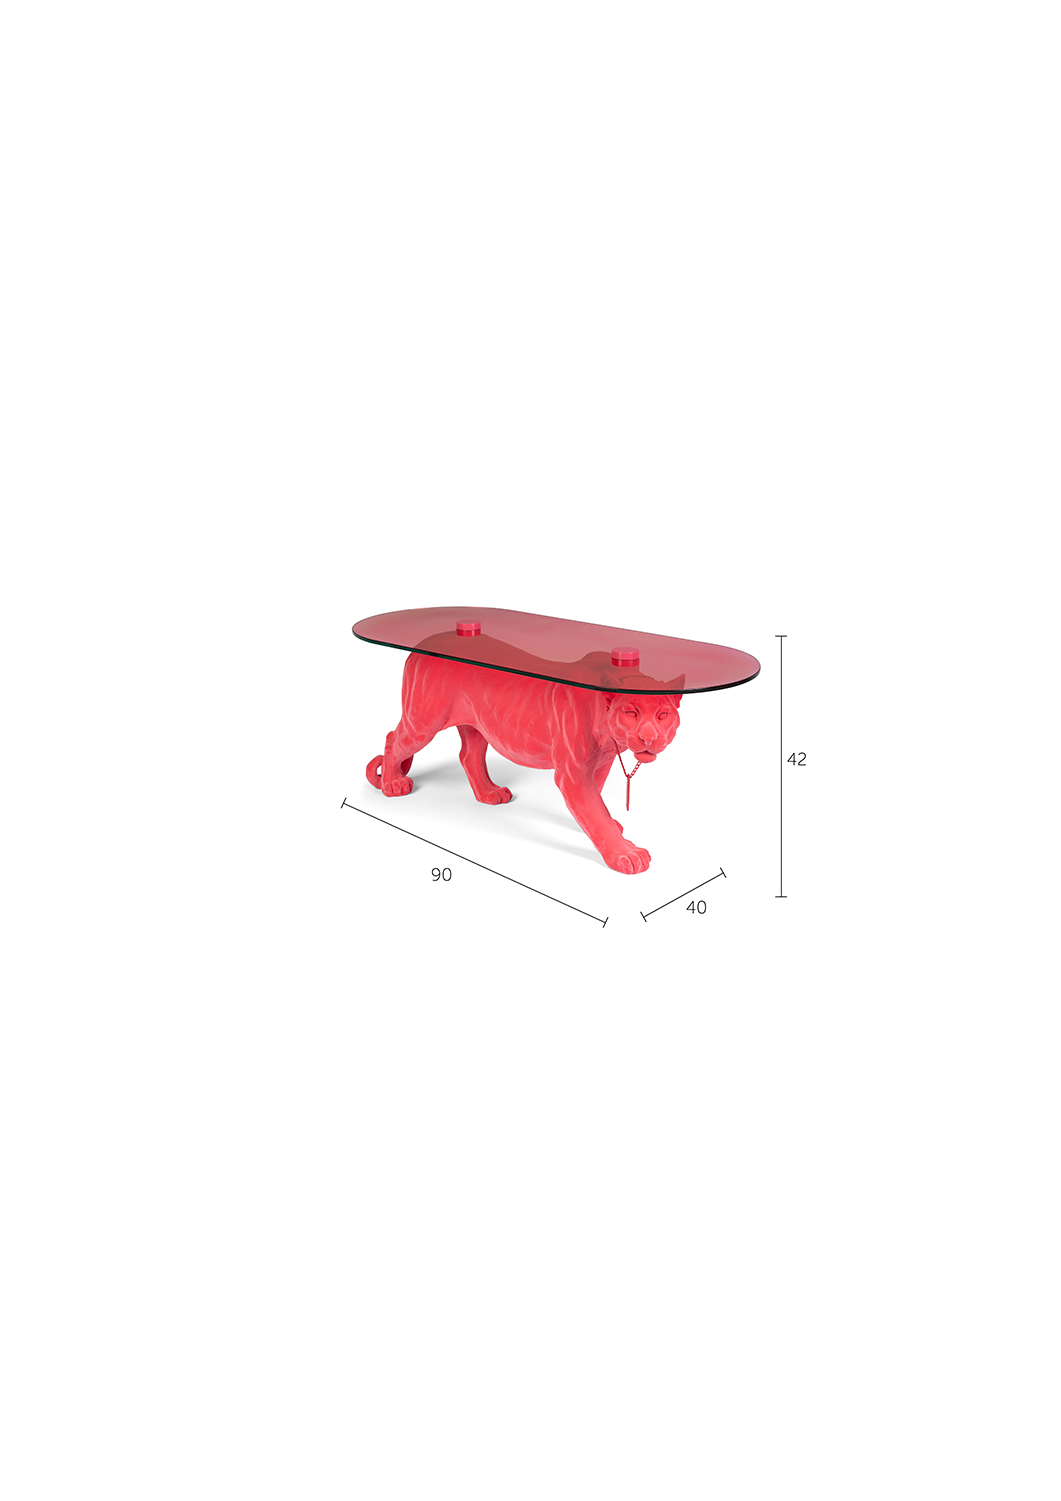 DOPE AS HELL Beistelltisch in Pink präsentiert im Onlineshop von KAQTU Design AG. Beistelltisch ist von Bold Monkey